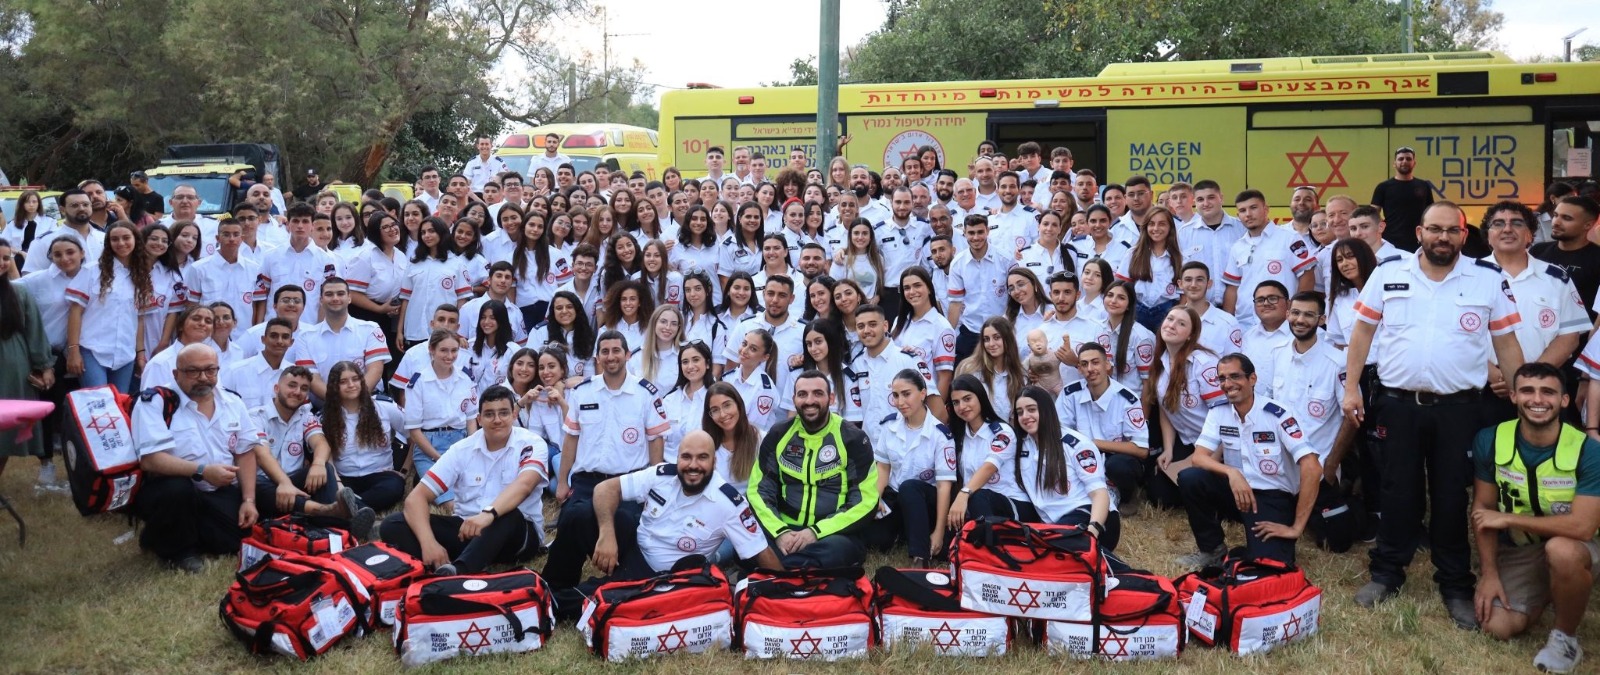 כ-150 חובשי רפואת חירום ובני נוער מגישי עזרה ראשונה חדשים הצטרפו למשפחת מד"א בתחנת אשקלון